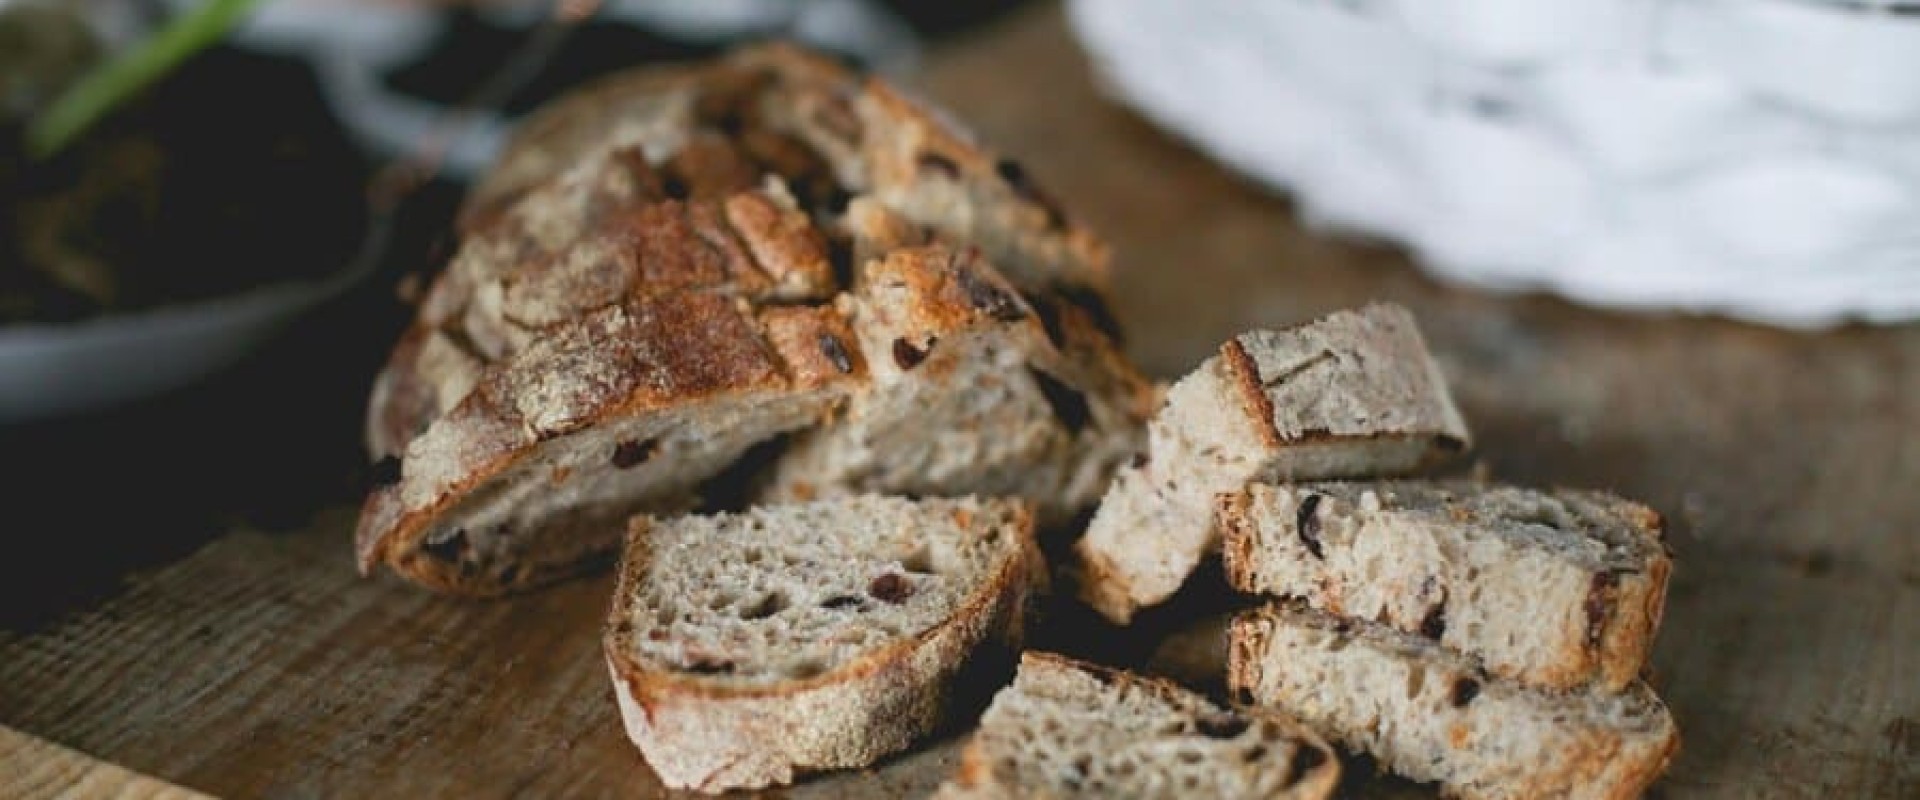 Пекарни объясняют увеличение цен на хлеб растущими затратами на логистику. Новости за 24 апреля